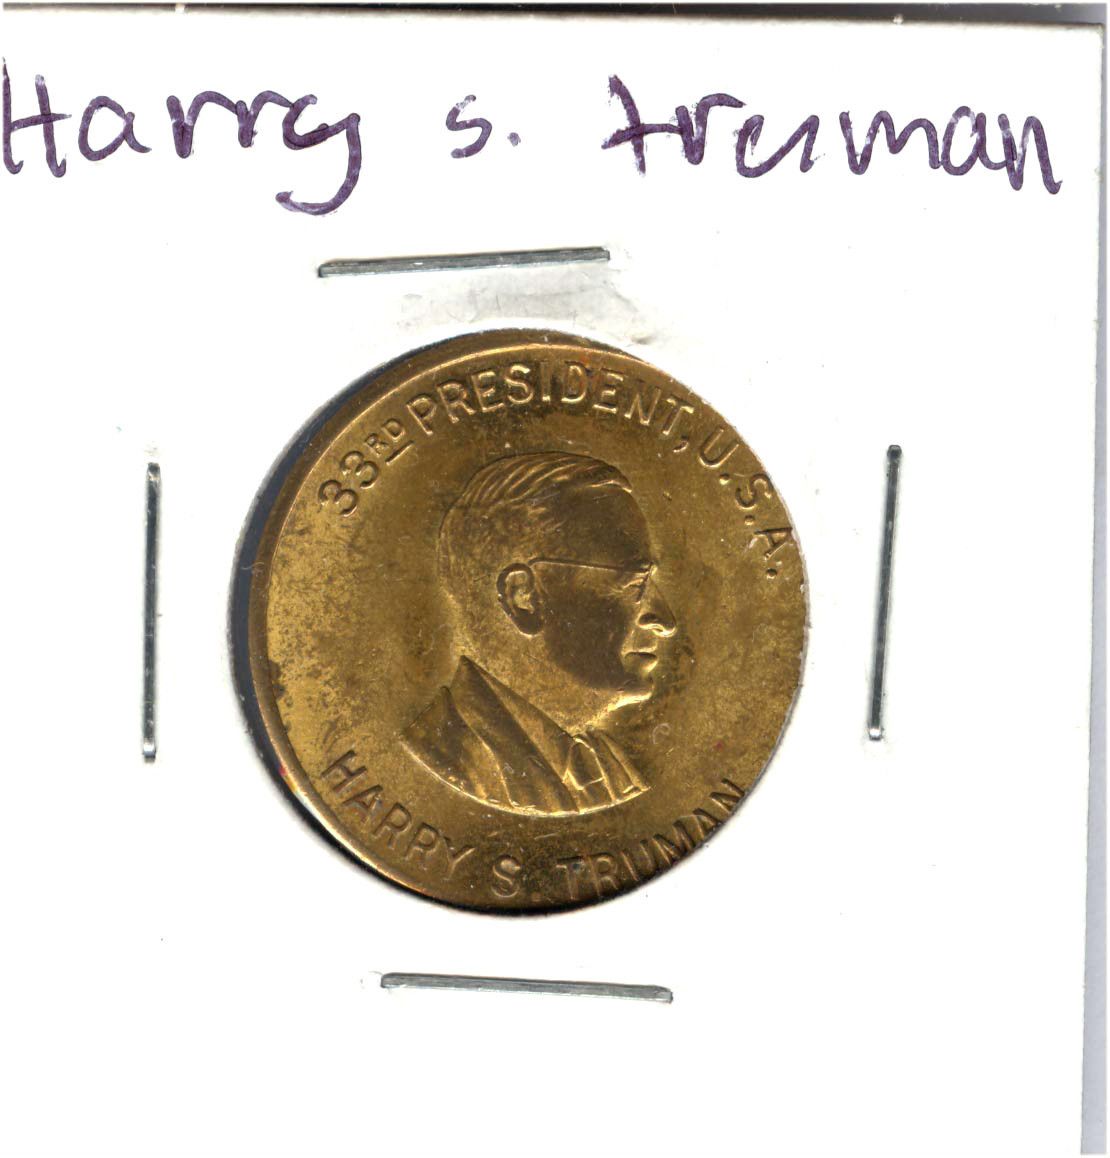 33rd President U s A Harry s Truman Token Coin